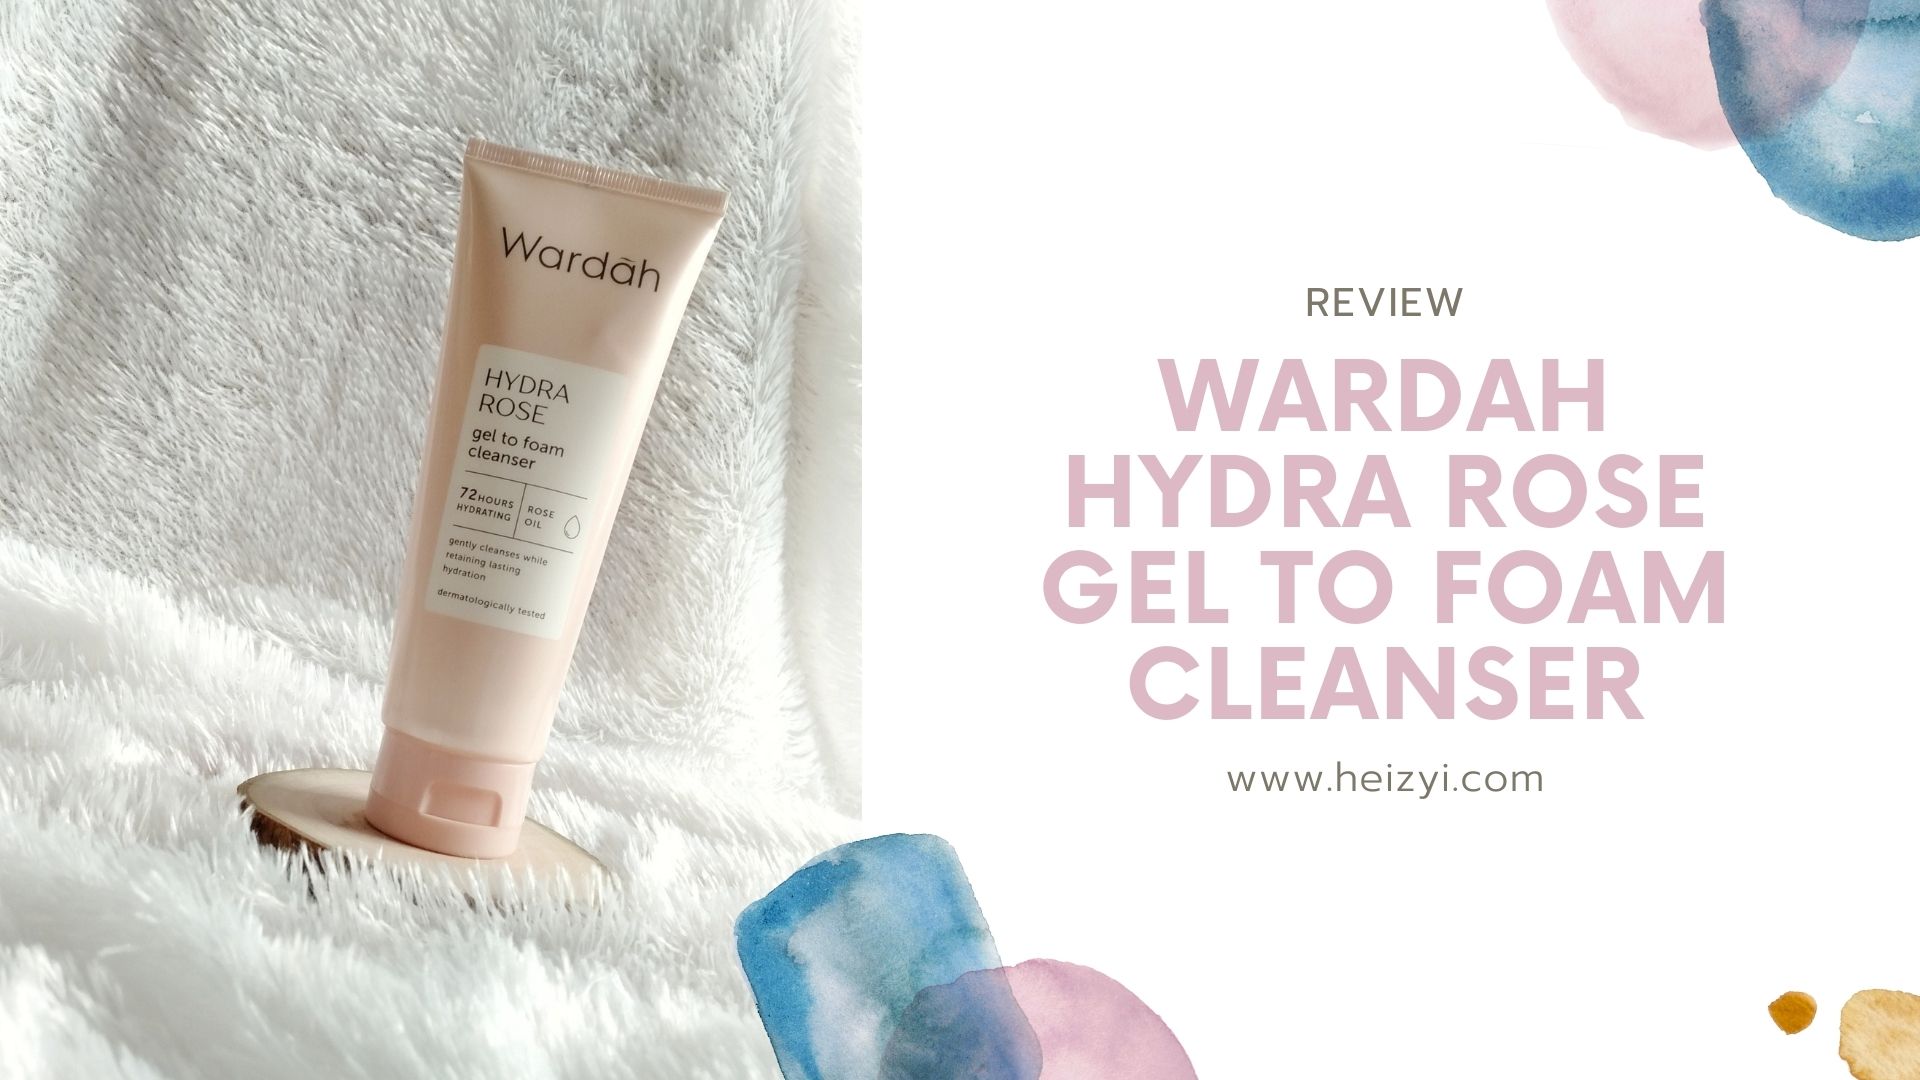 Review wardah hydra rose gel to foam cleanser